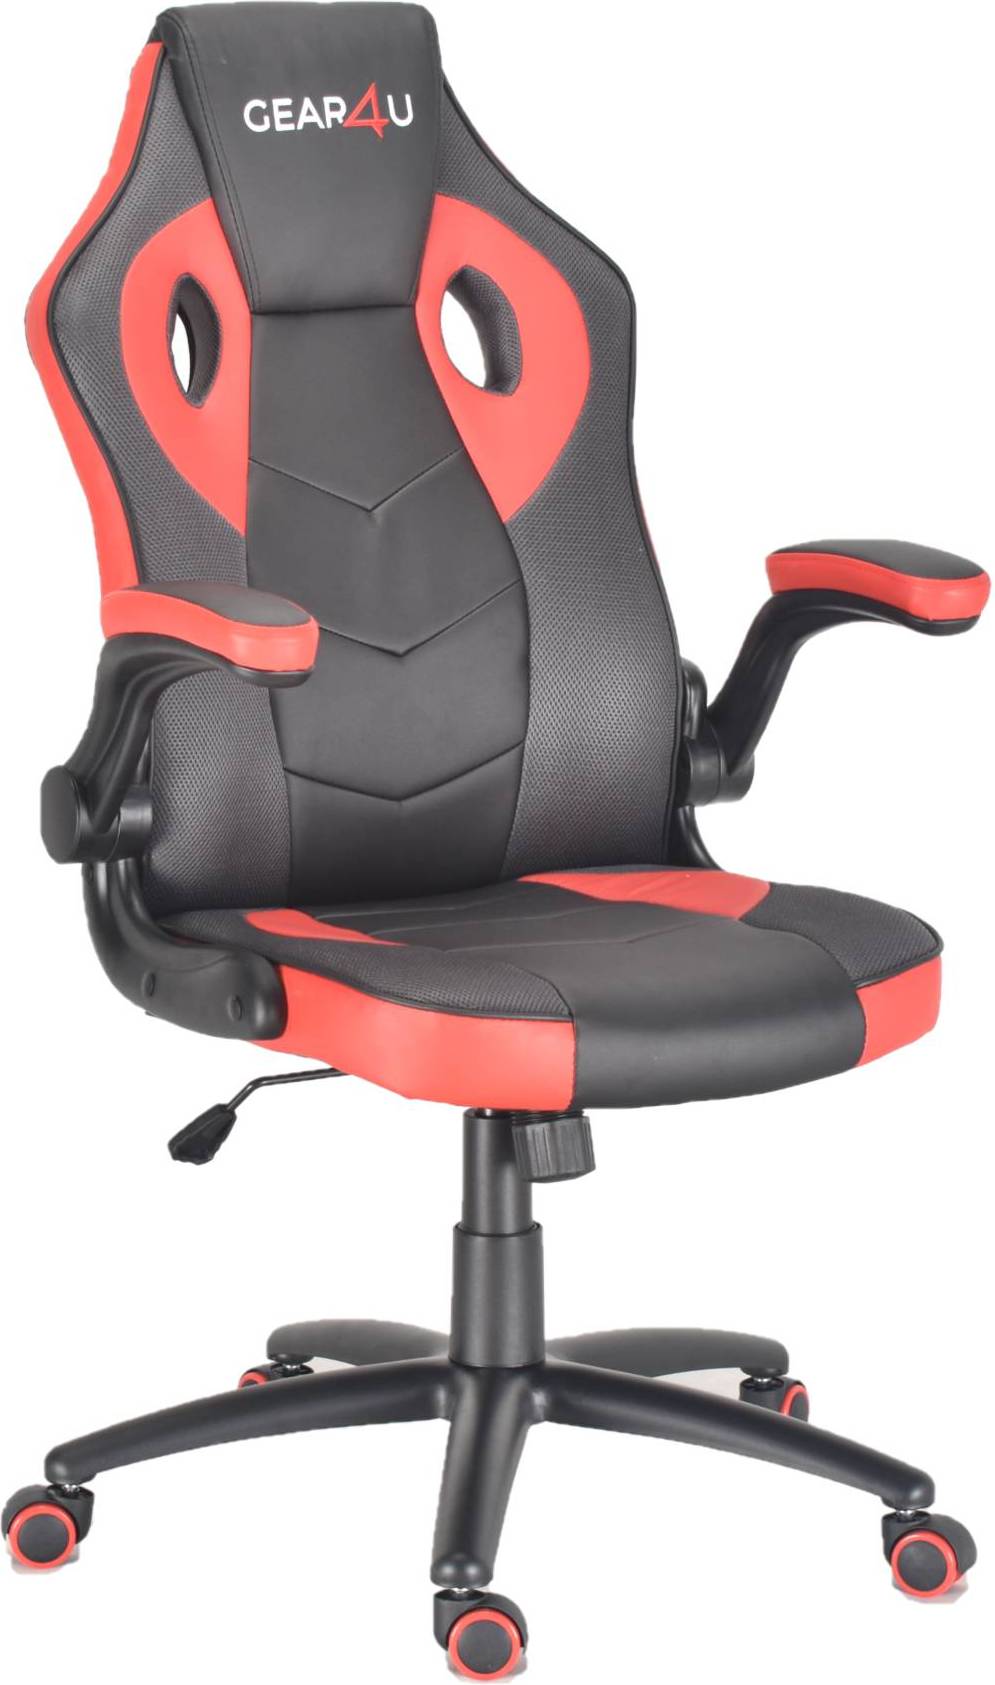  Bild på Gear4U Gambit Pro Gaming Chair - Black/Red gamingstol